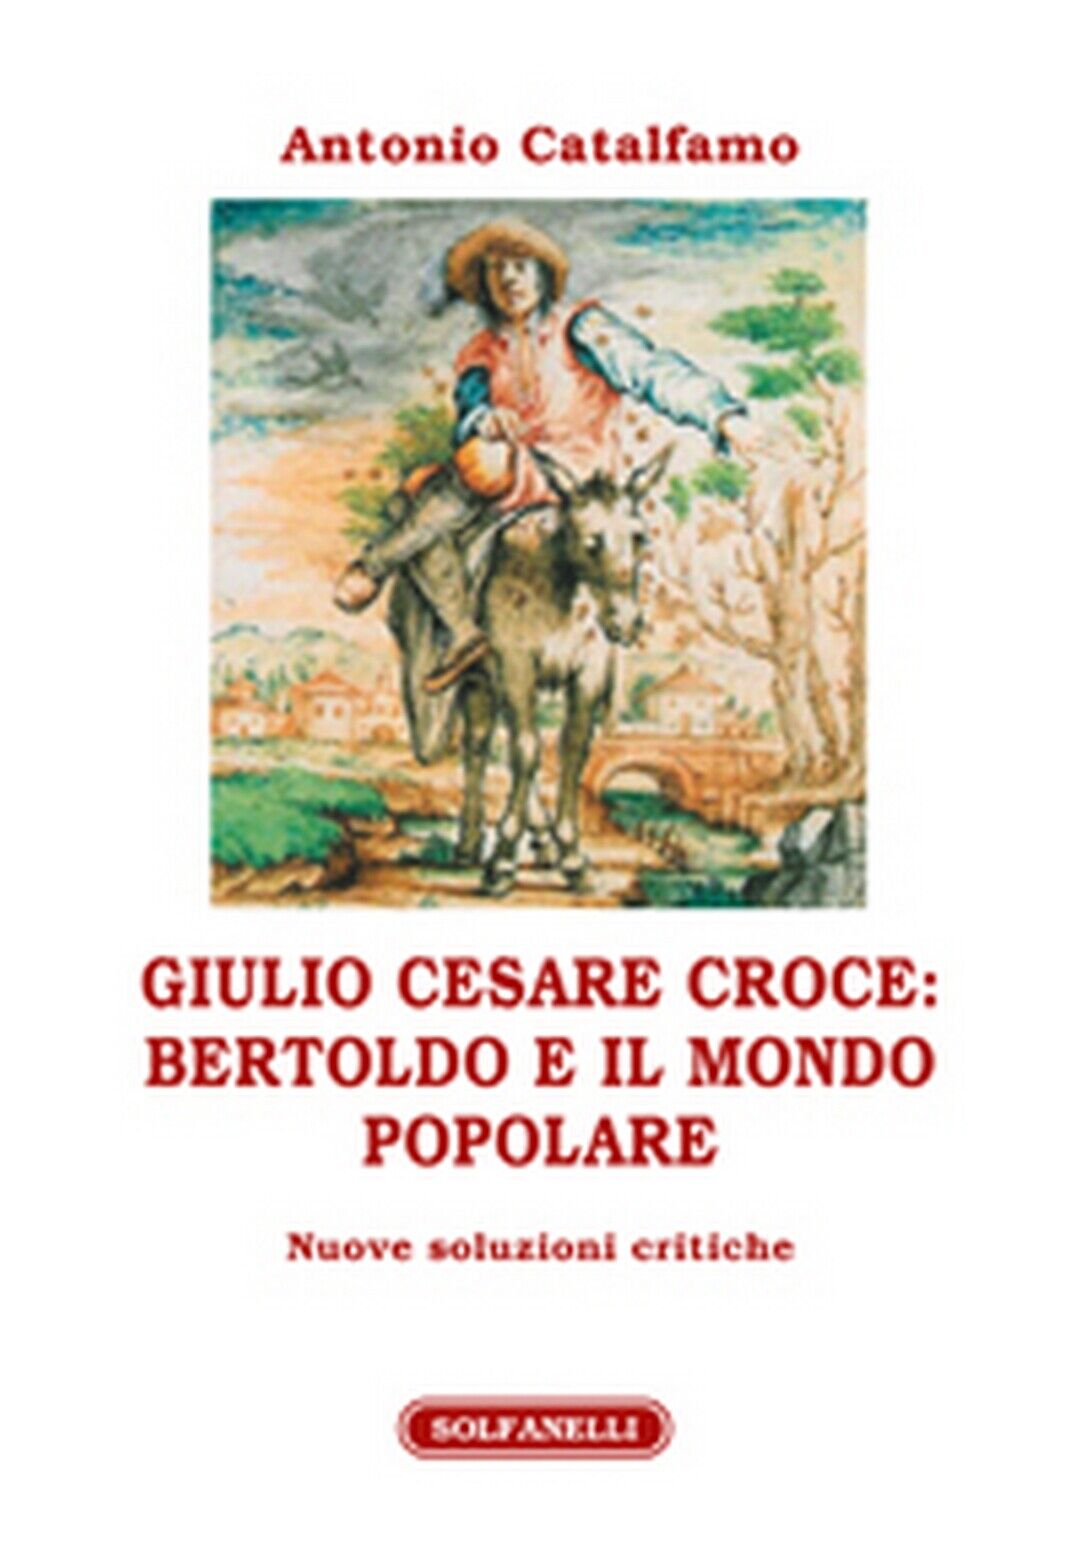 GIULIO CESARE CROCE: BERTOLDO E IL MONDO POPOLARE  di Antonio Catalfamo libro usato